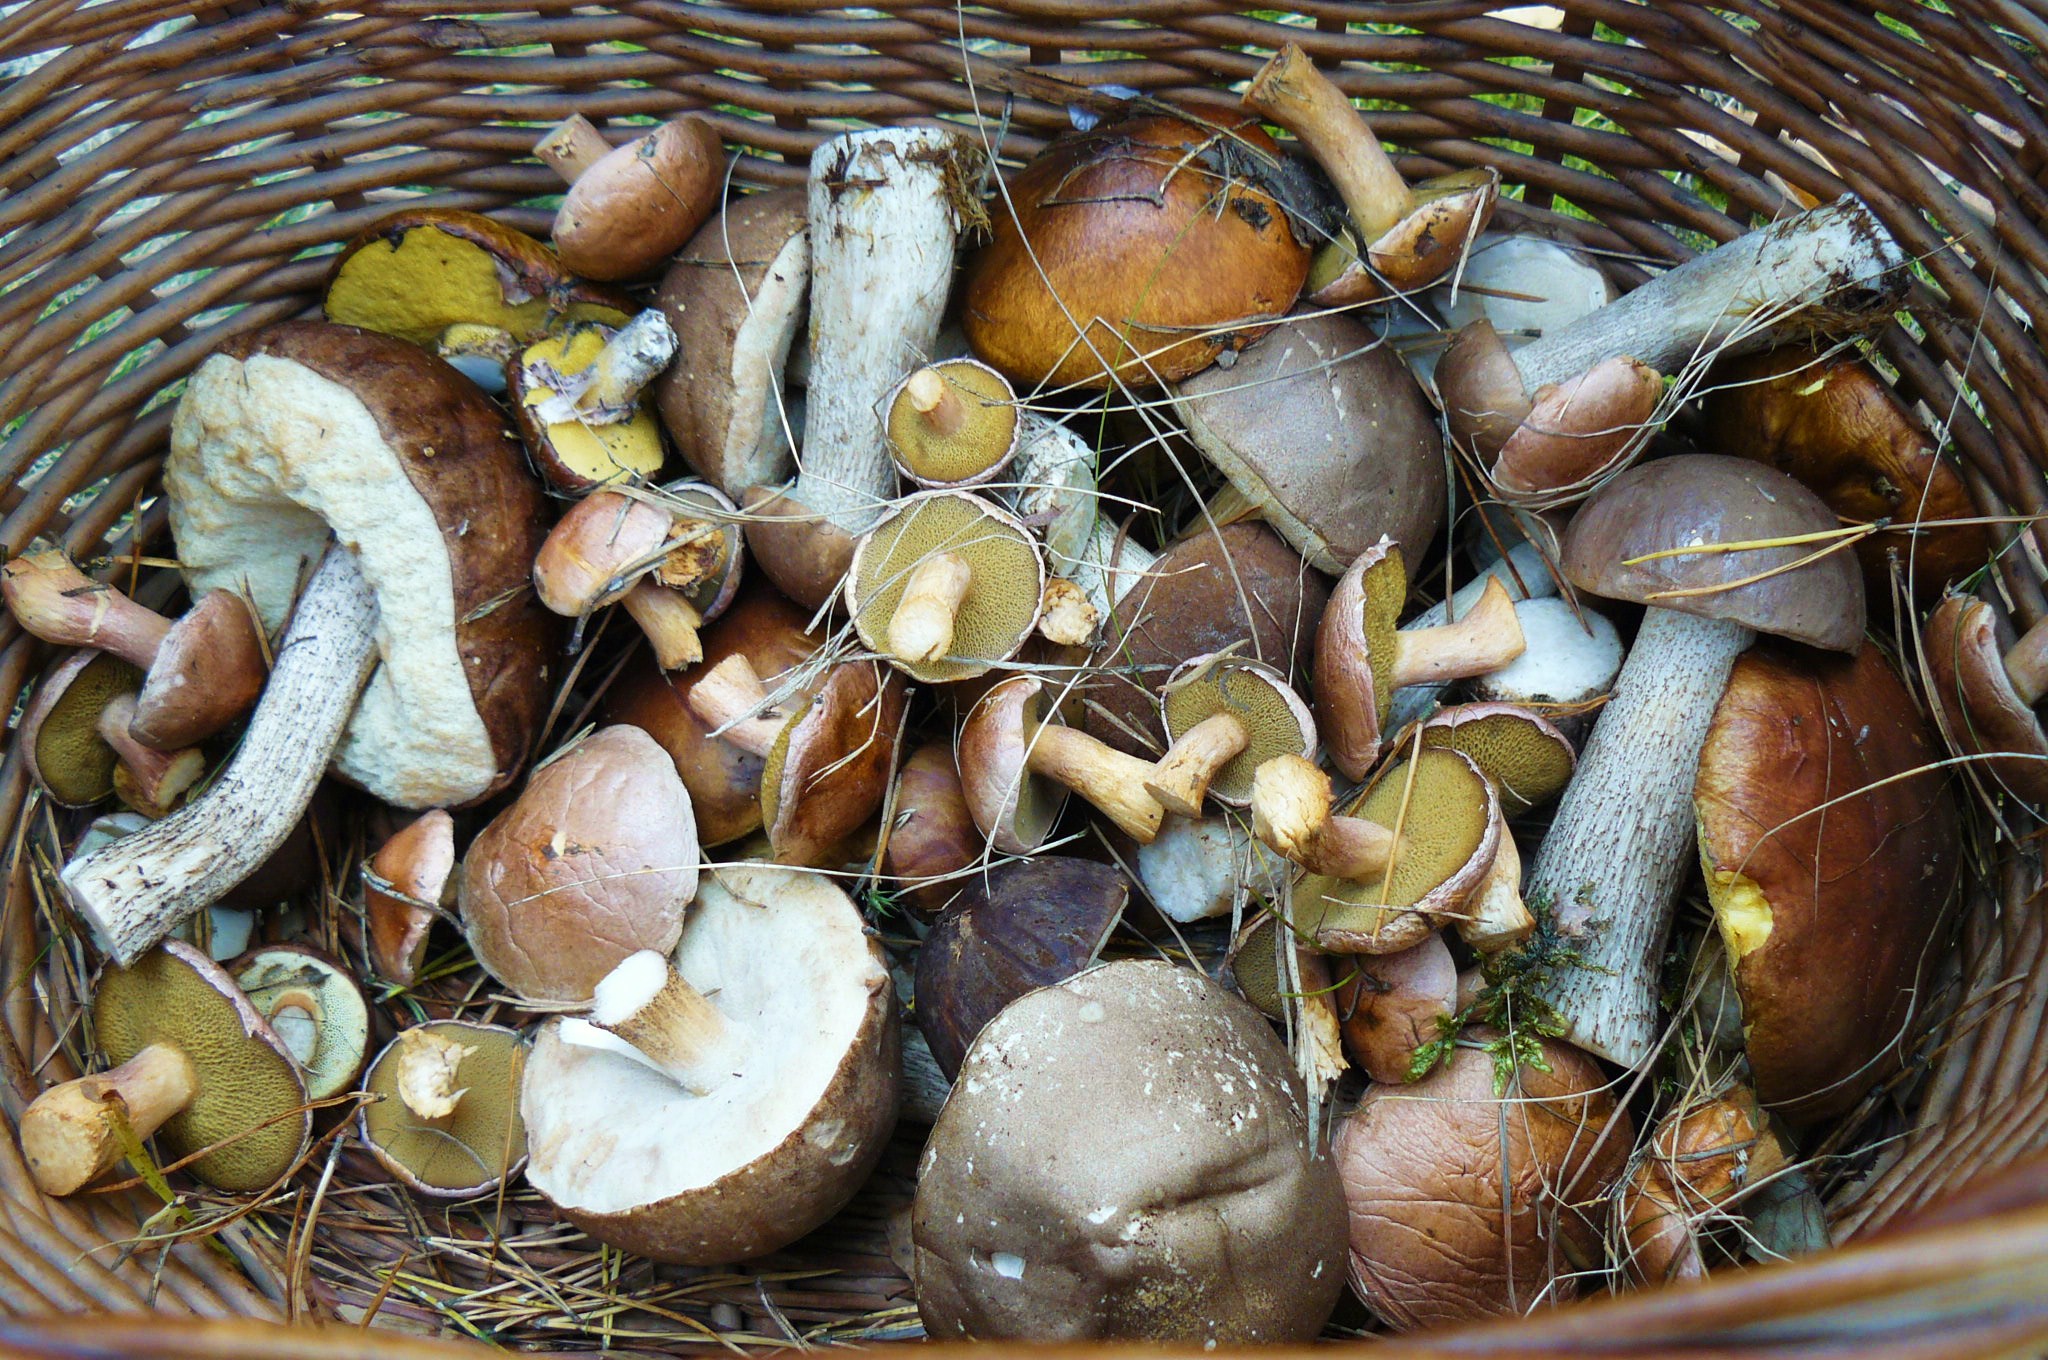 Polish mushrooms (grzybobranie) Puszcza Notecka